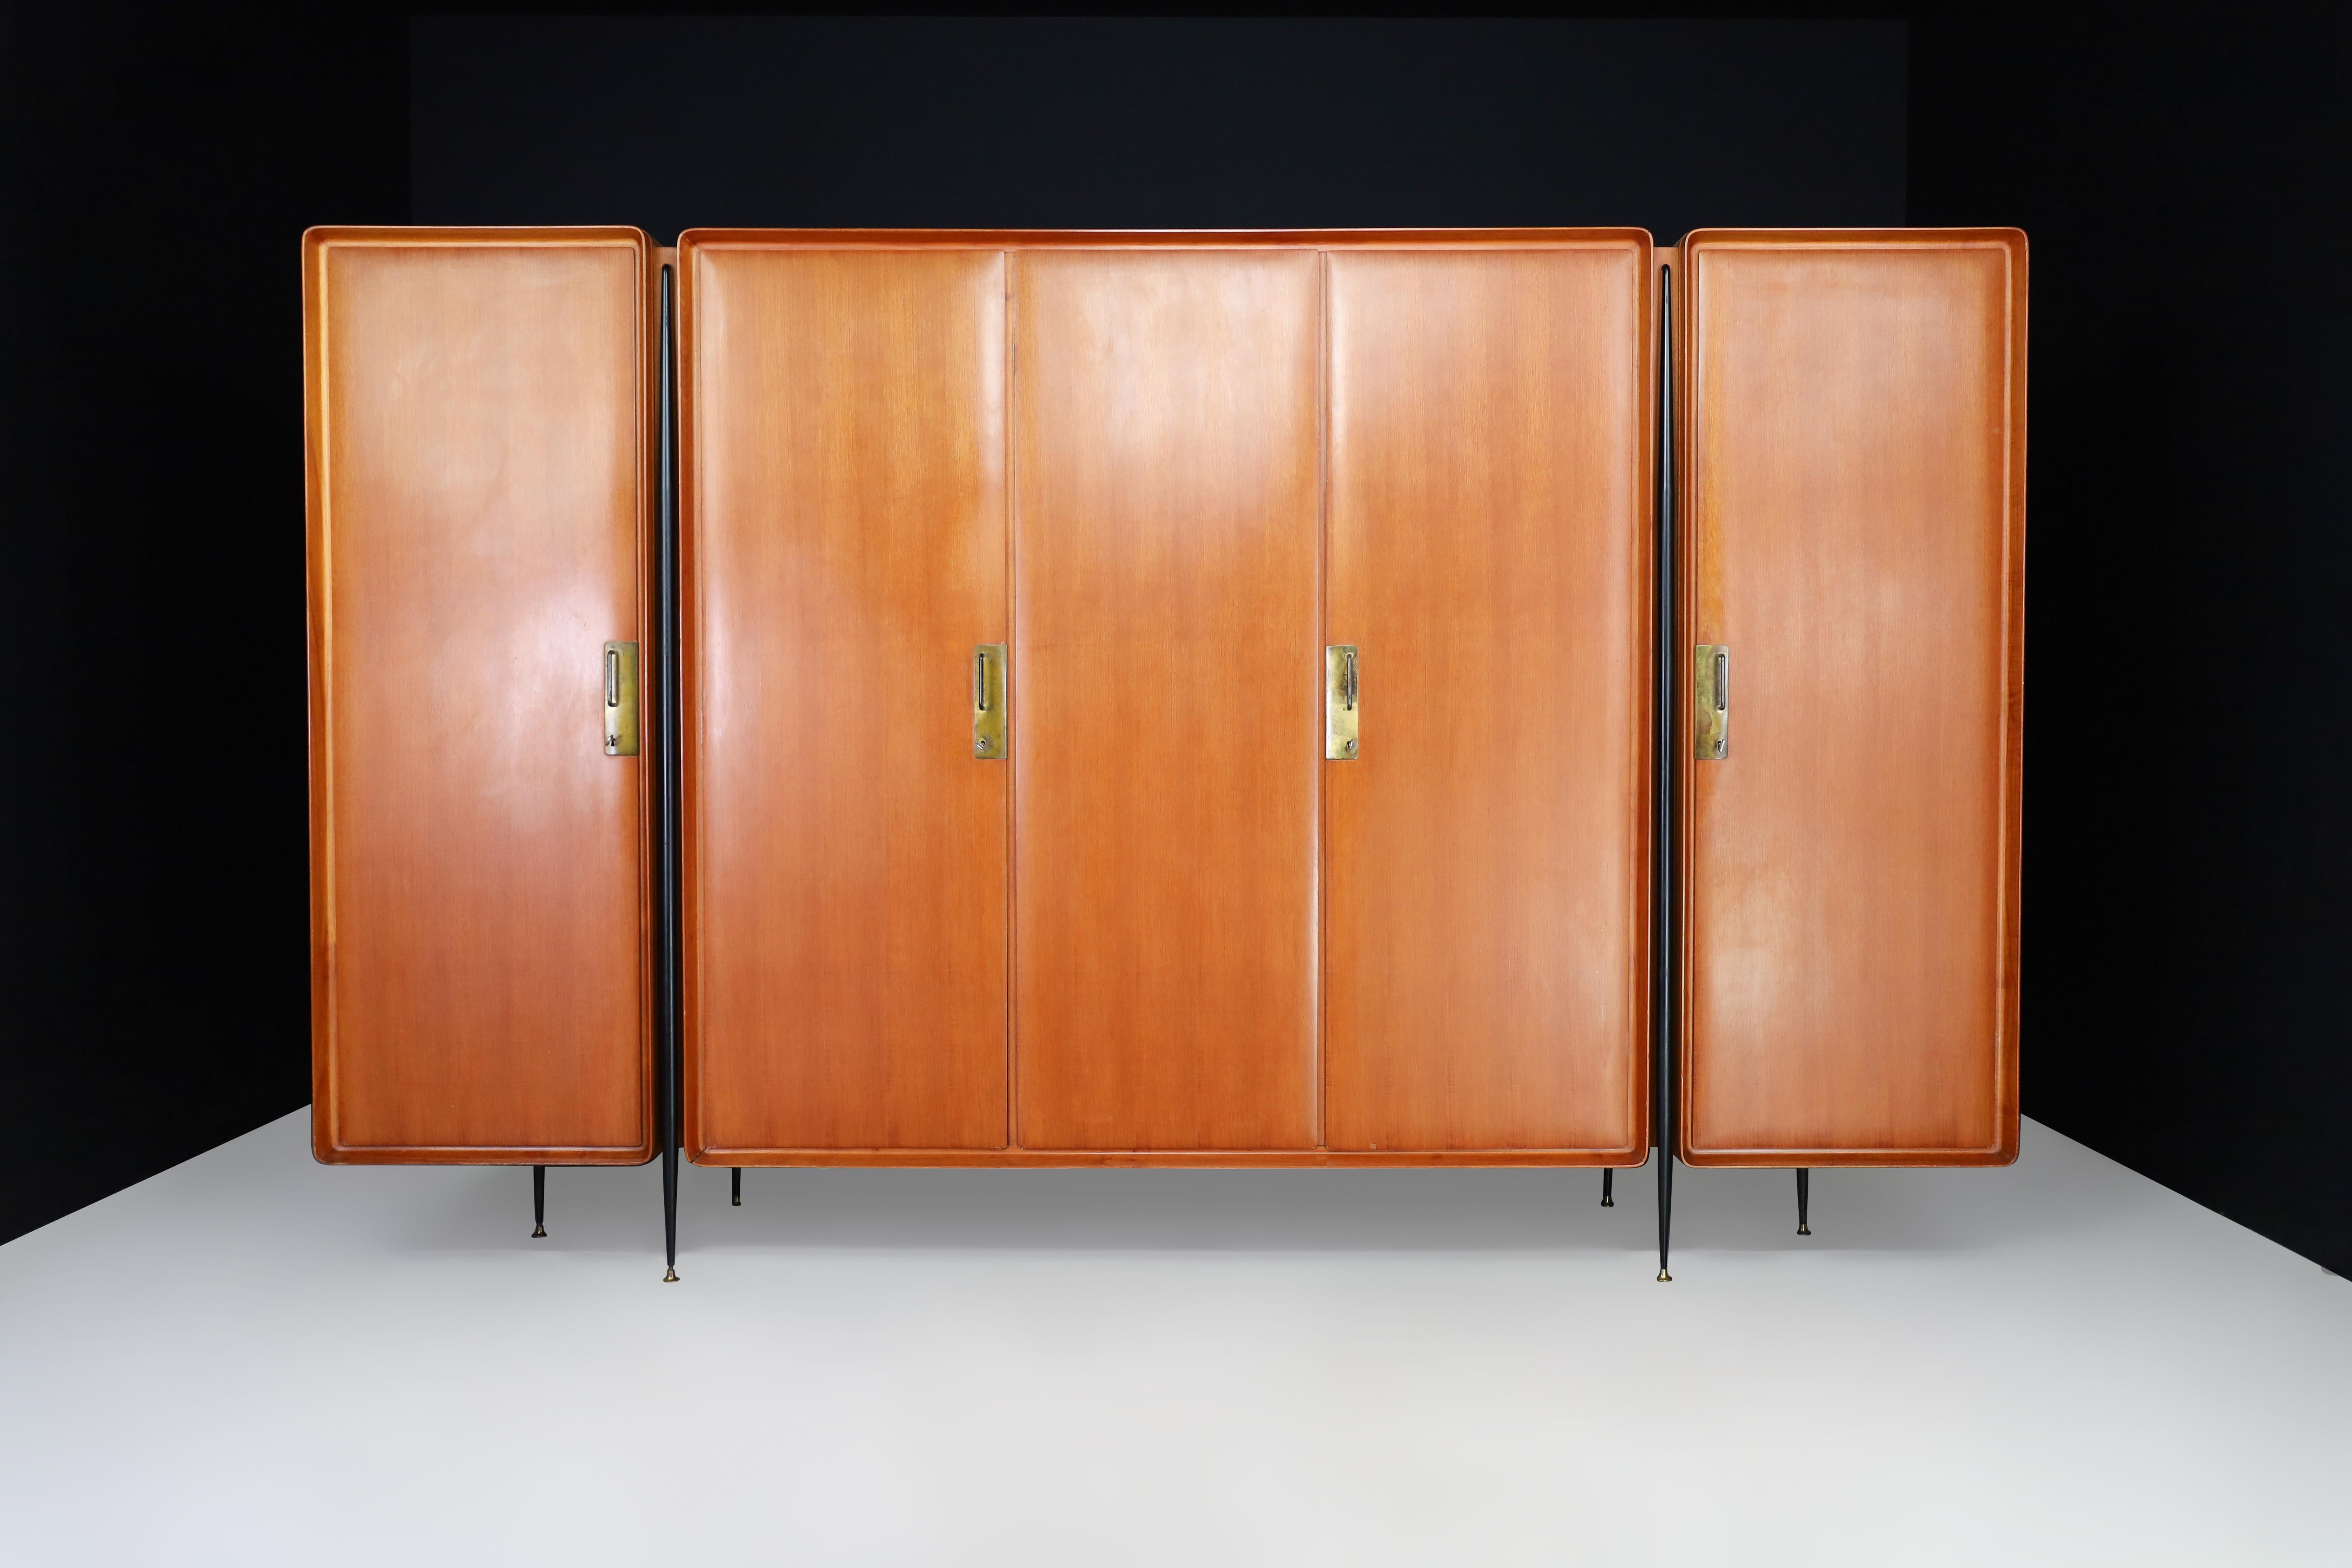 Grande armoire du milieu du siècle de Silvio Cavatorta en noyer, bouleau et laiton Italie 1958

Silvio Cavatorta, designer de meubles renommé, a créé une armoire exceptionnelle en Italie en 1958. L'armoire est fabriquée en beau bois de noyer avec